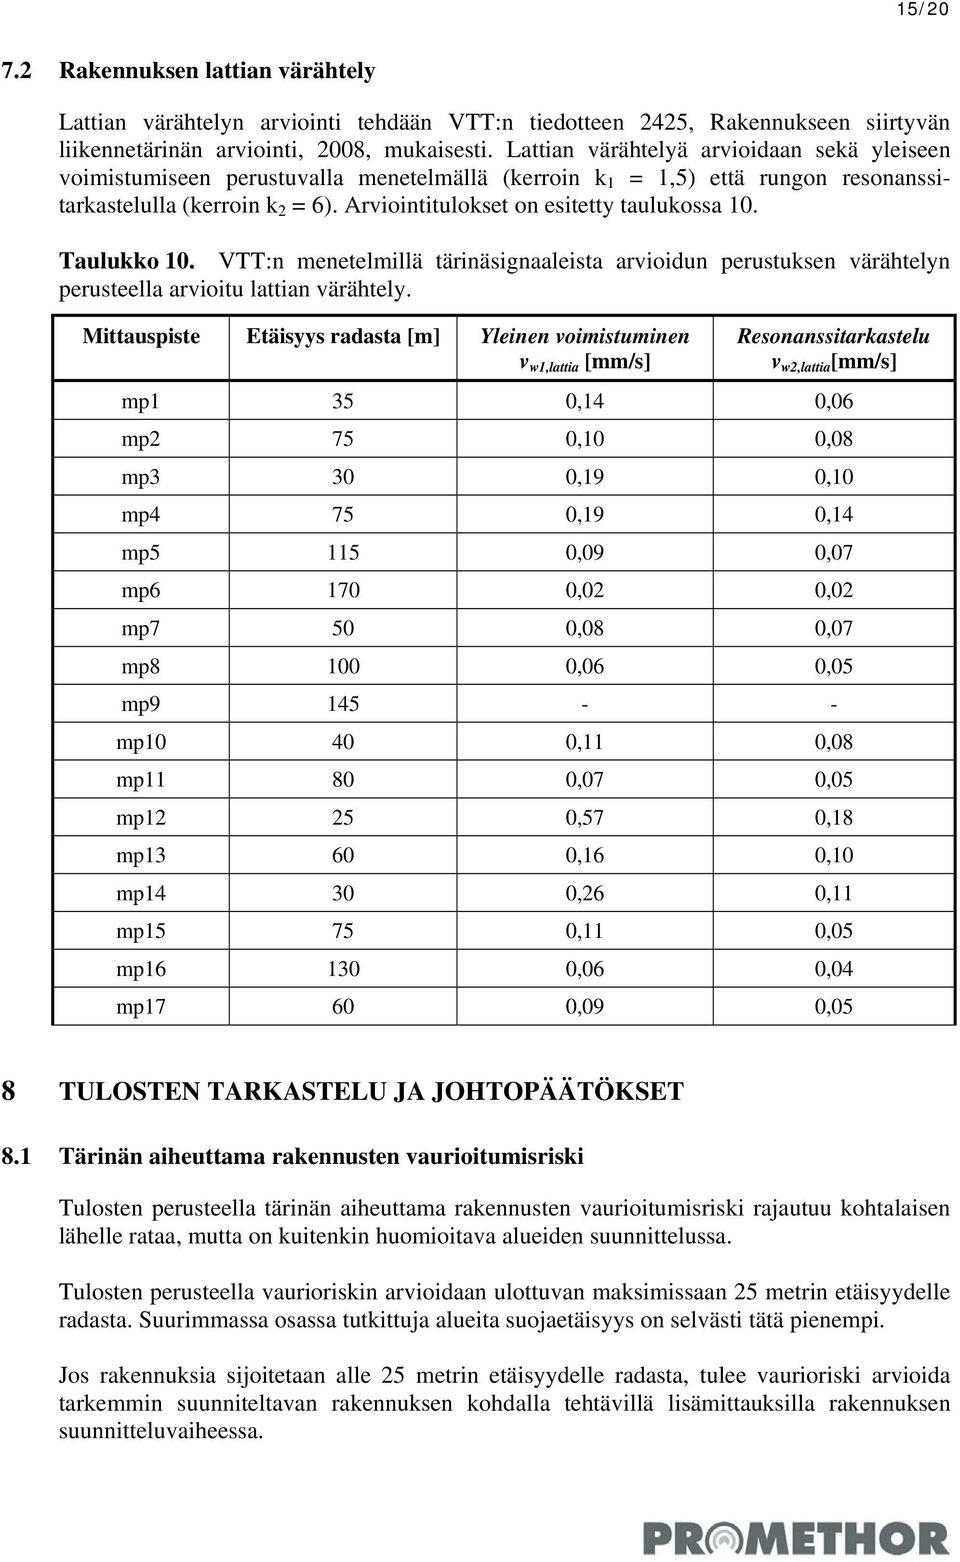 Arviointitulokset on esitetty taulukossa 10. Taulukko 10. VTT:n menetelmillä tärinäsignaaleista arvioidun perustuksen värähtelyn perusteella arvioitu lattian värähtely.